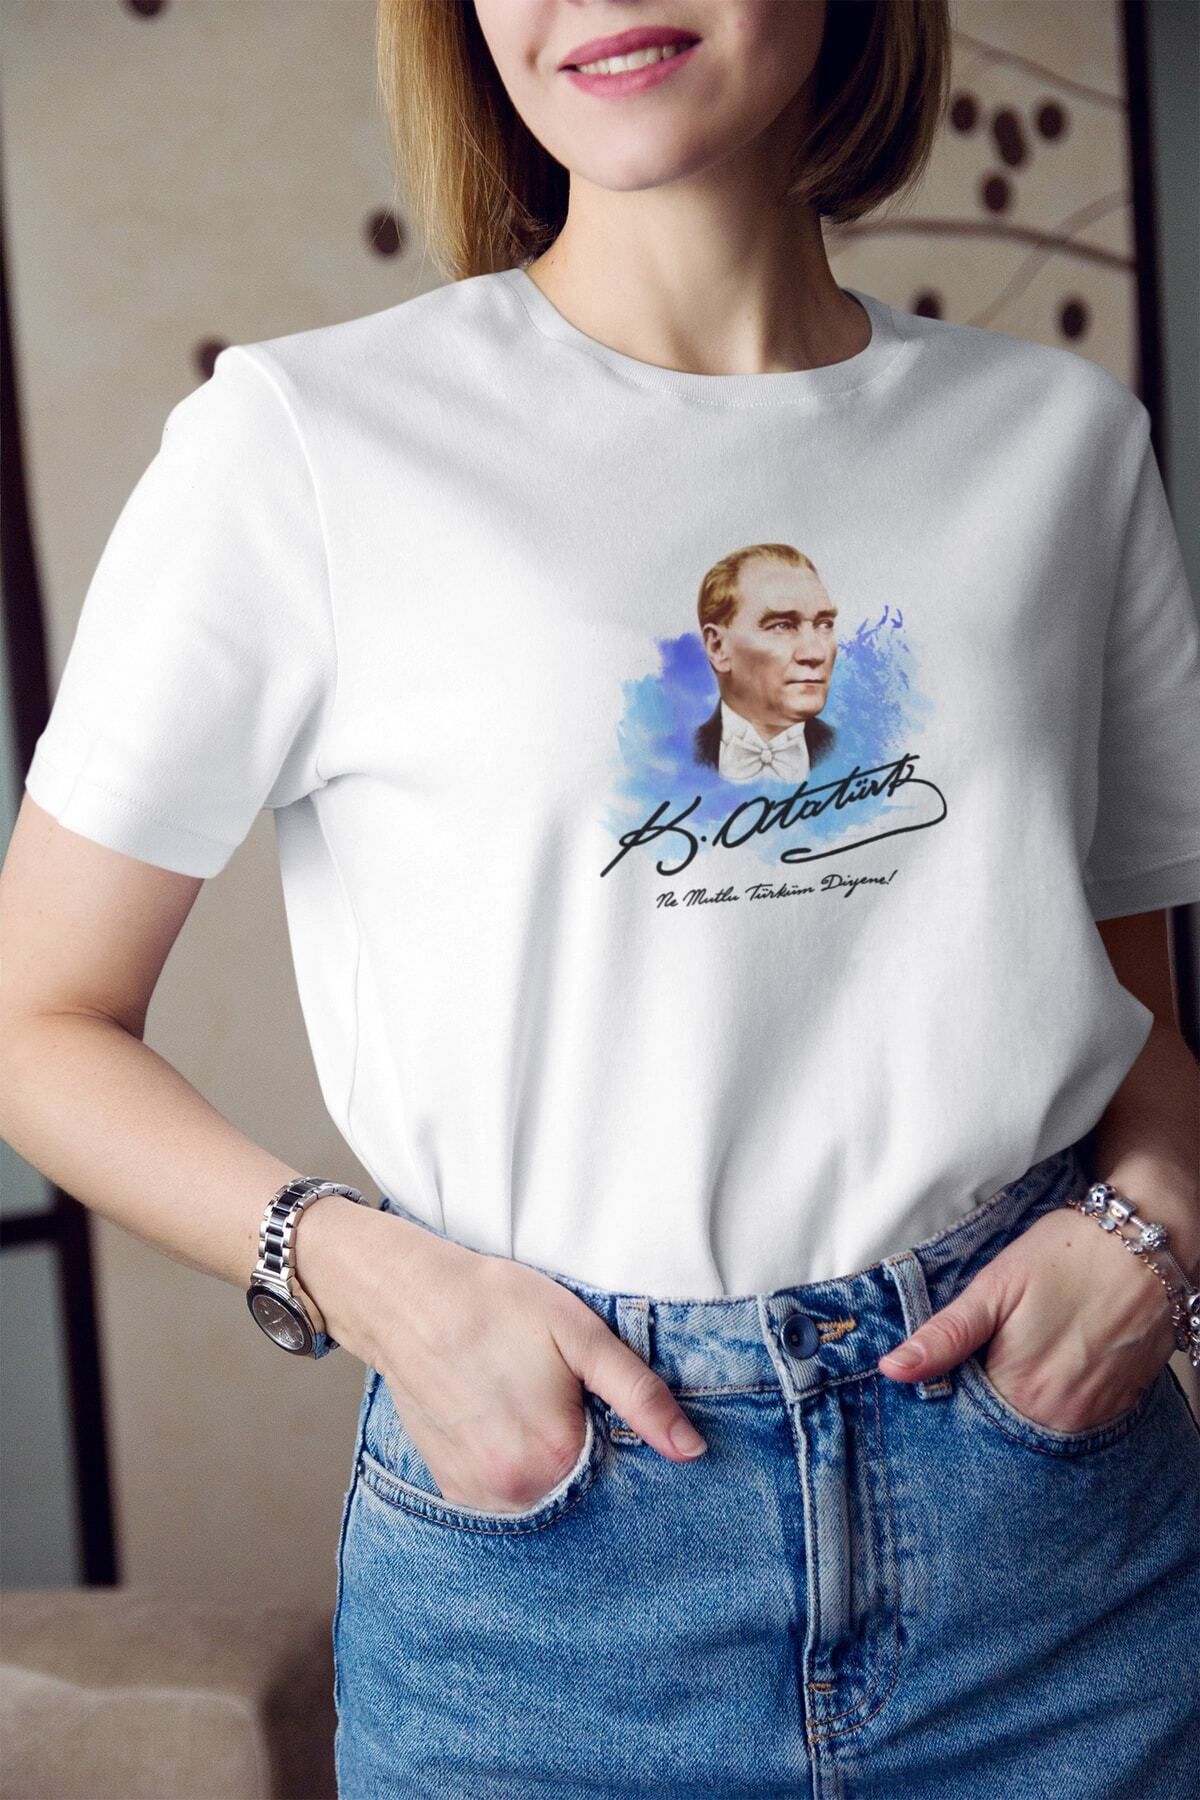 blausee wear 23 nisan 19 Mayıs 29 Ekim Ne Mutlu Türküm Diyene Atatürk Baskılı Tişört